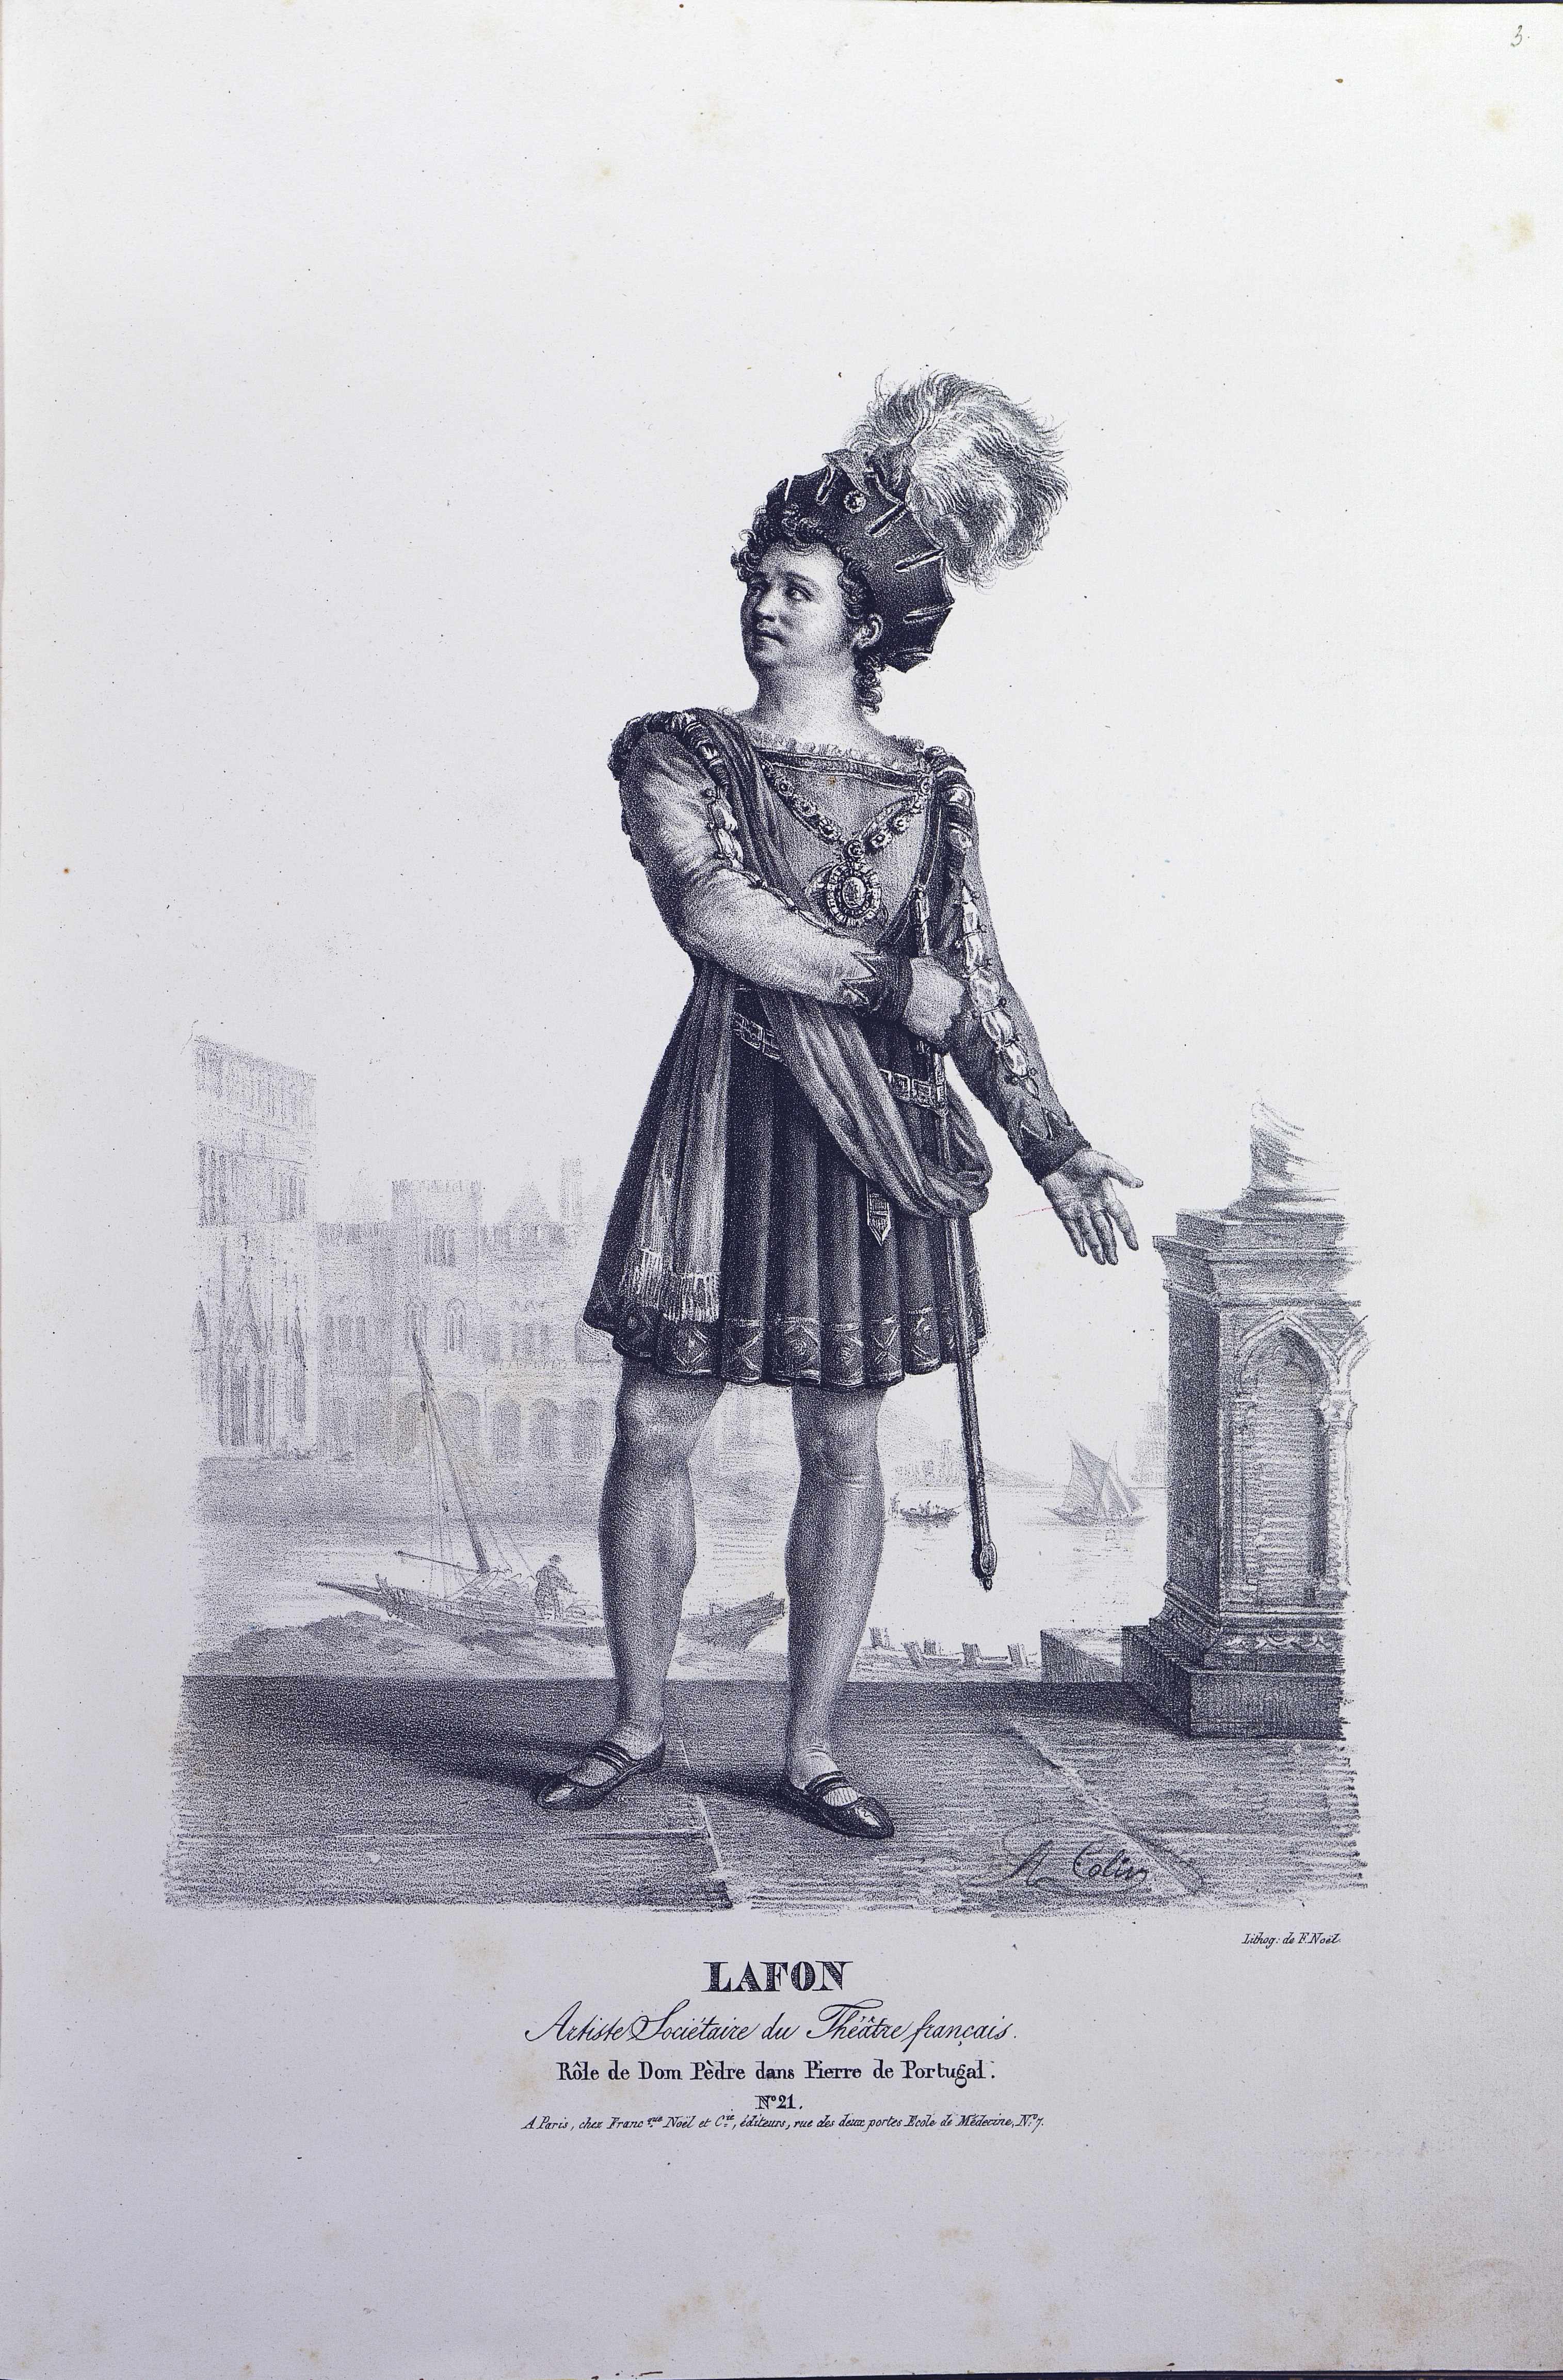 2.	Пьер-Шери Лафон (1797-1873) в роли дона Педро в спектакле «Пьер Португальский».